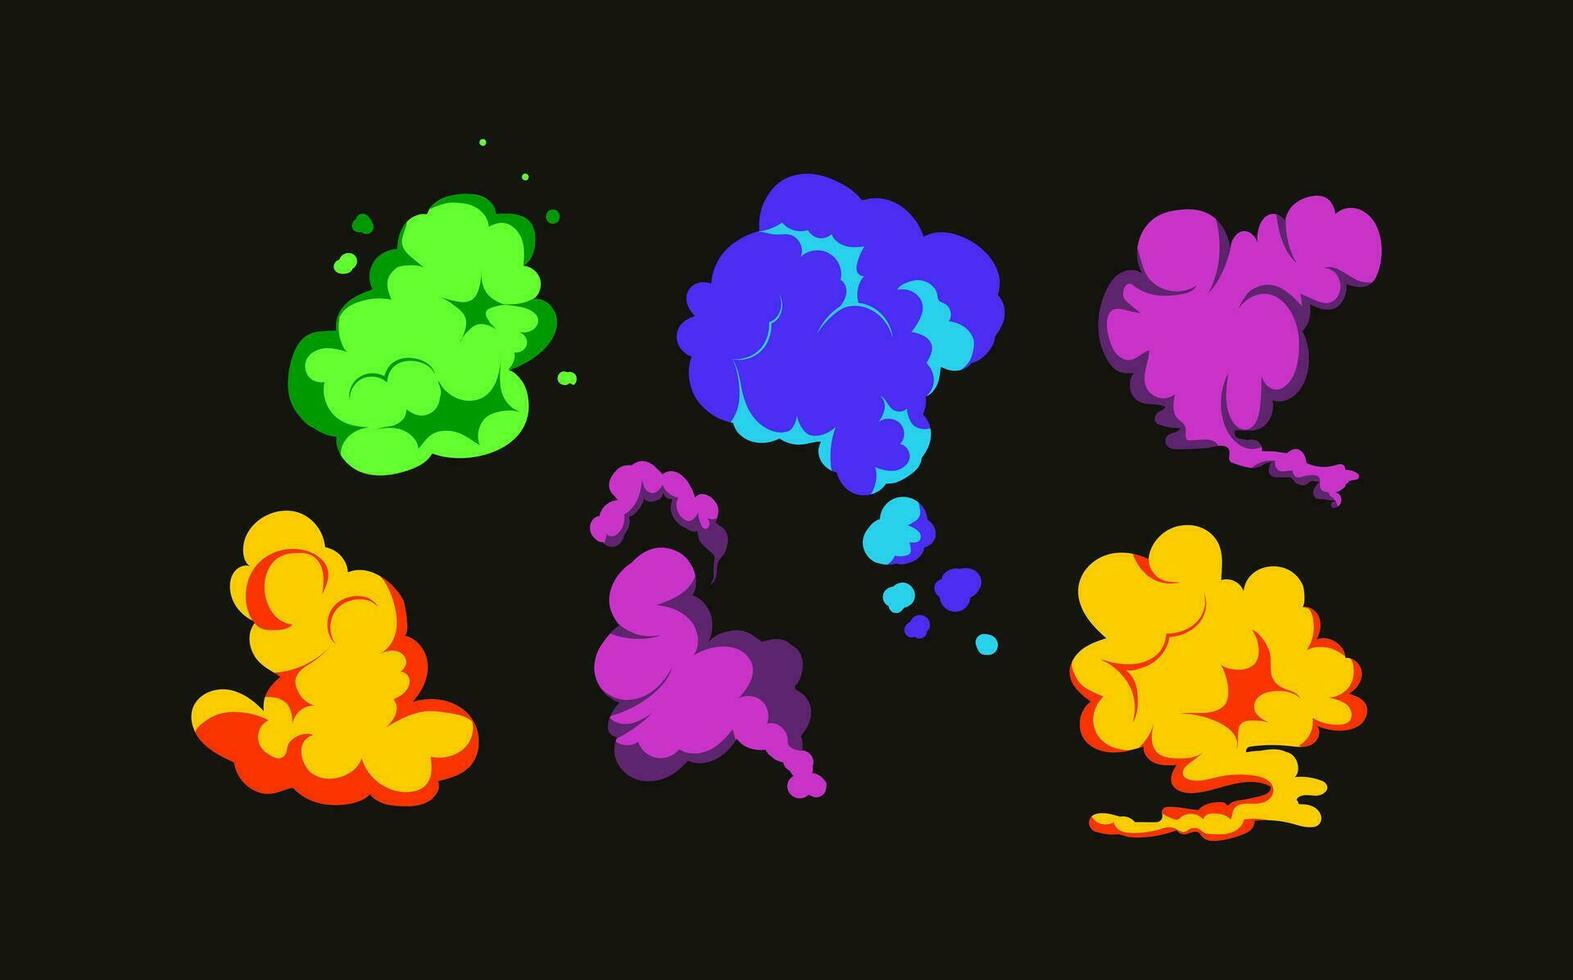 fumar explosión animación de un explosión con cómic volador nubes conjunto de aislado vector ilustraciones a crear un explosión efecto. el efecto de fumar movimienot, brillar y dinámica auge.